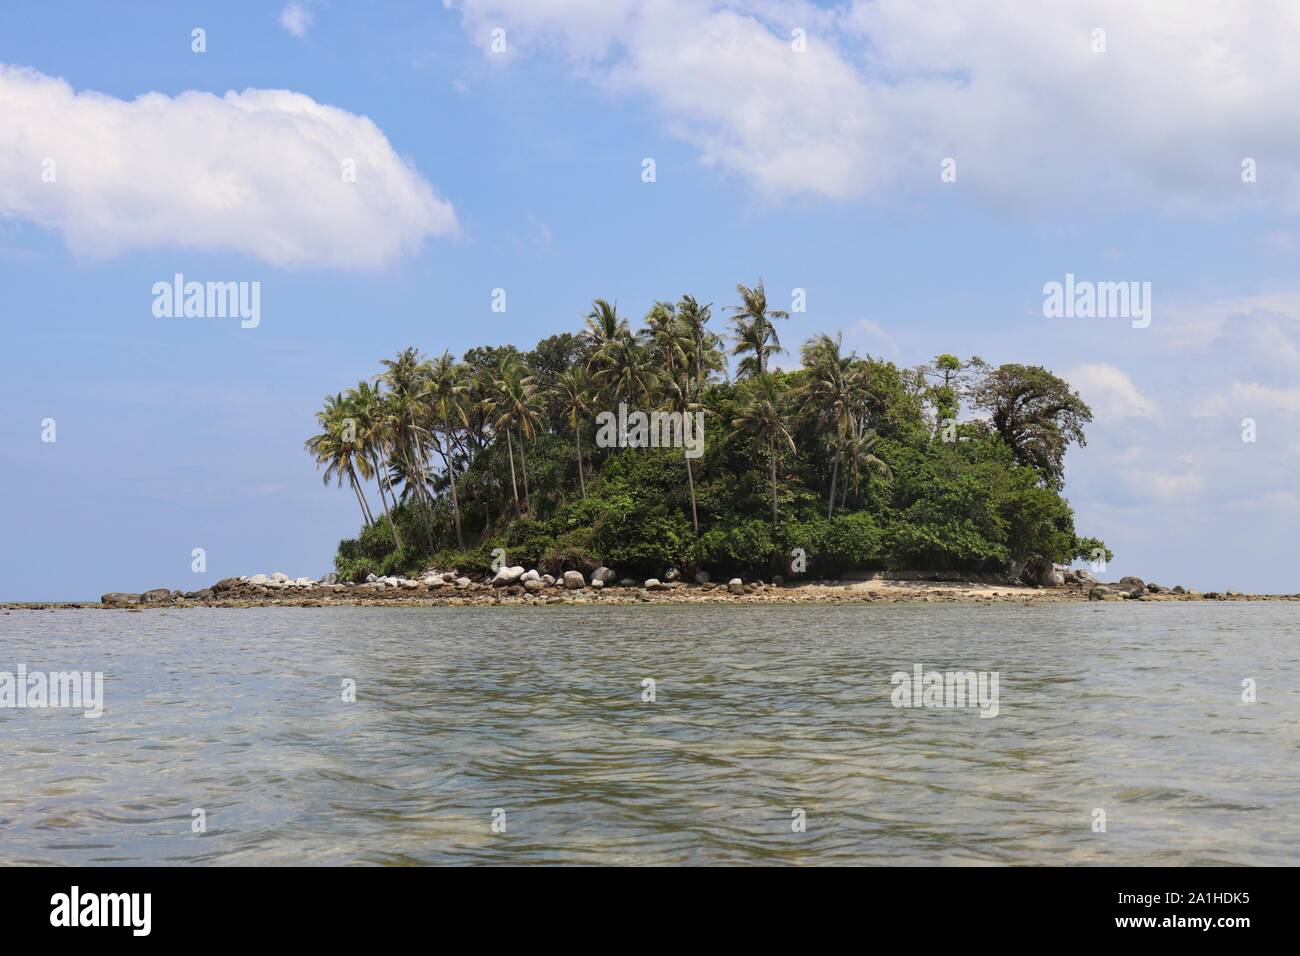 Île tropicale avec palmiers dans un océan, vue pittoresque d'une eau calme. Seascape colorés avec ciel bleu et nuages blancs, vacances au paradis Banque D'Images